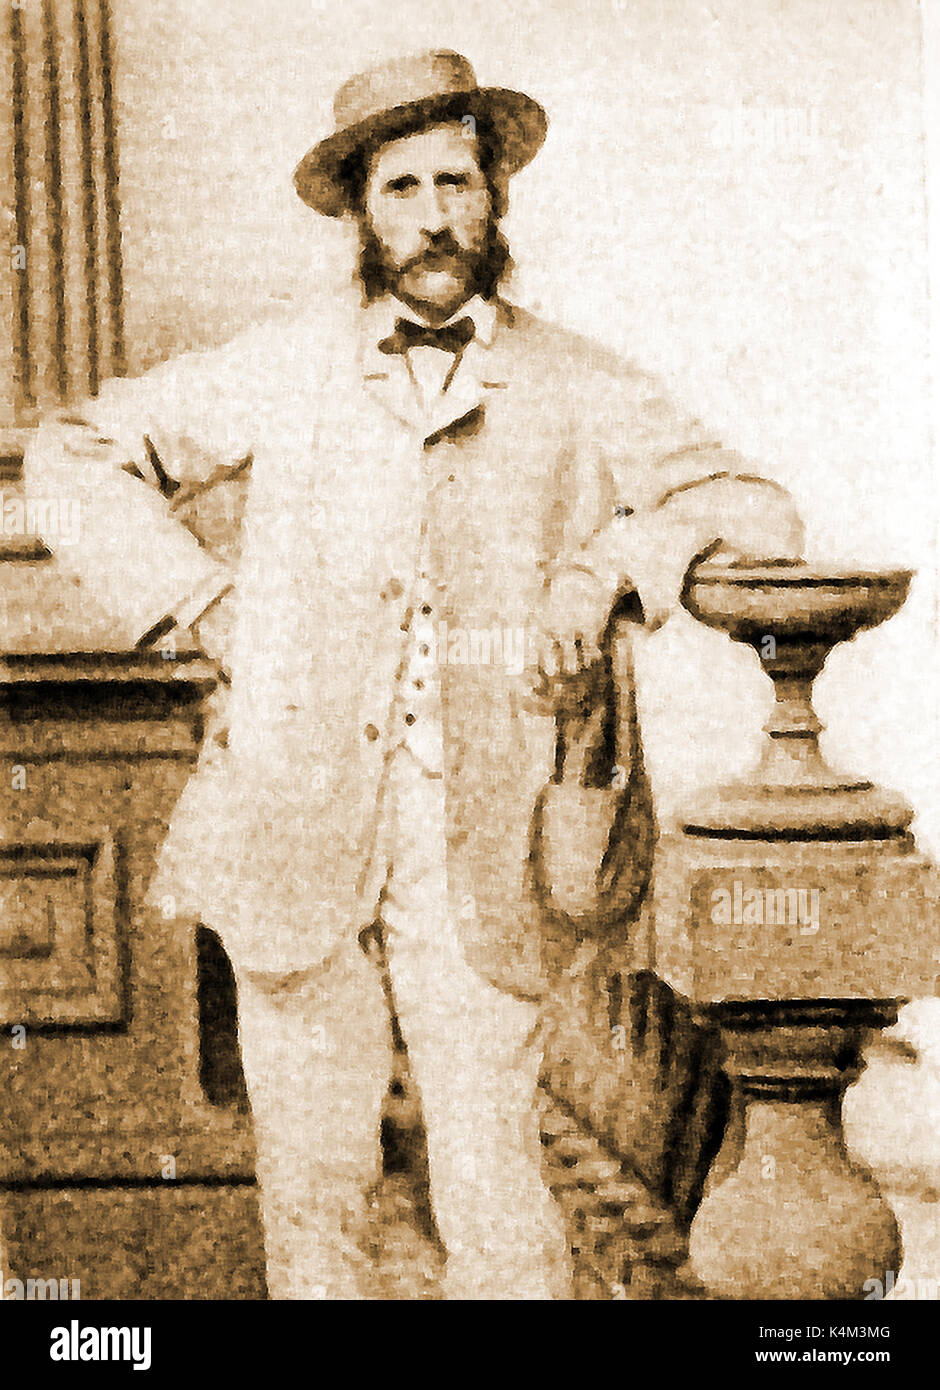 Ein Porträt von Clipper Kapitän H.W. Johnson, ein Erzähler von Geschichten, die behaupteten, als 2.Offizier der britischen brig 'diadem' war er in eine Meuterei beteiligt und war einer von nur zwei Überlebenden. Stockfoto